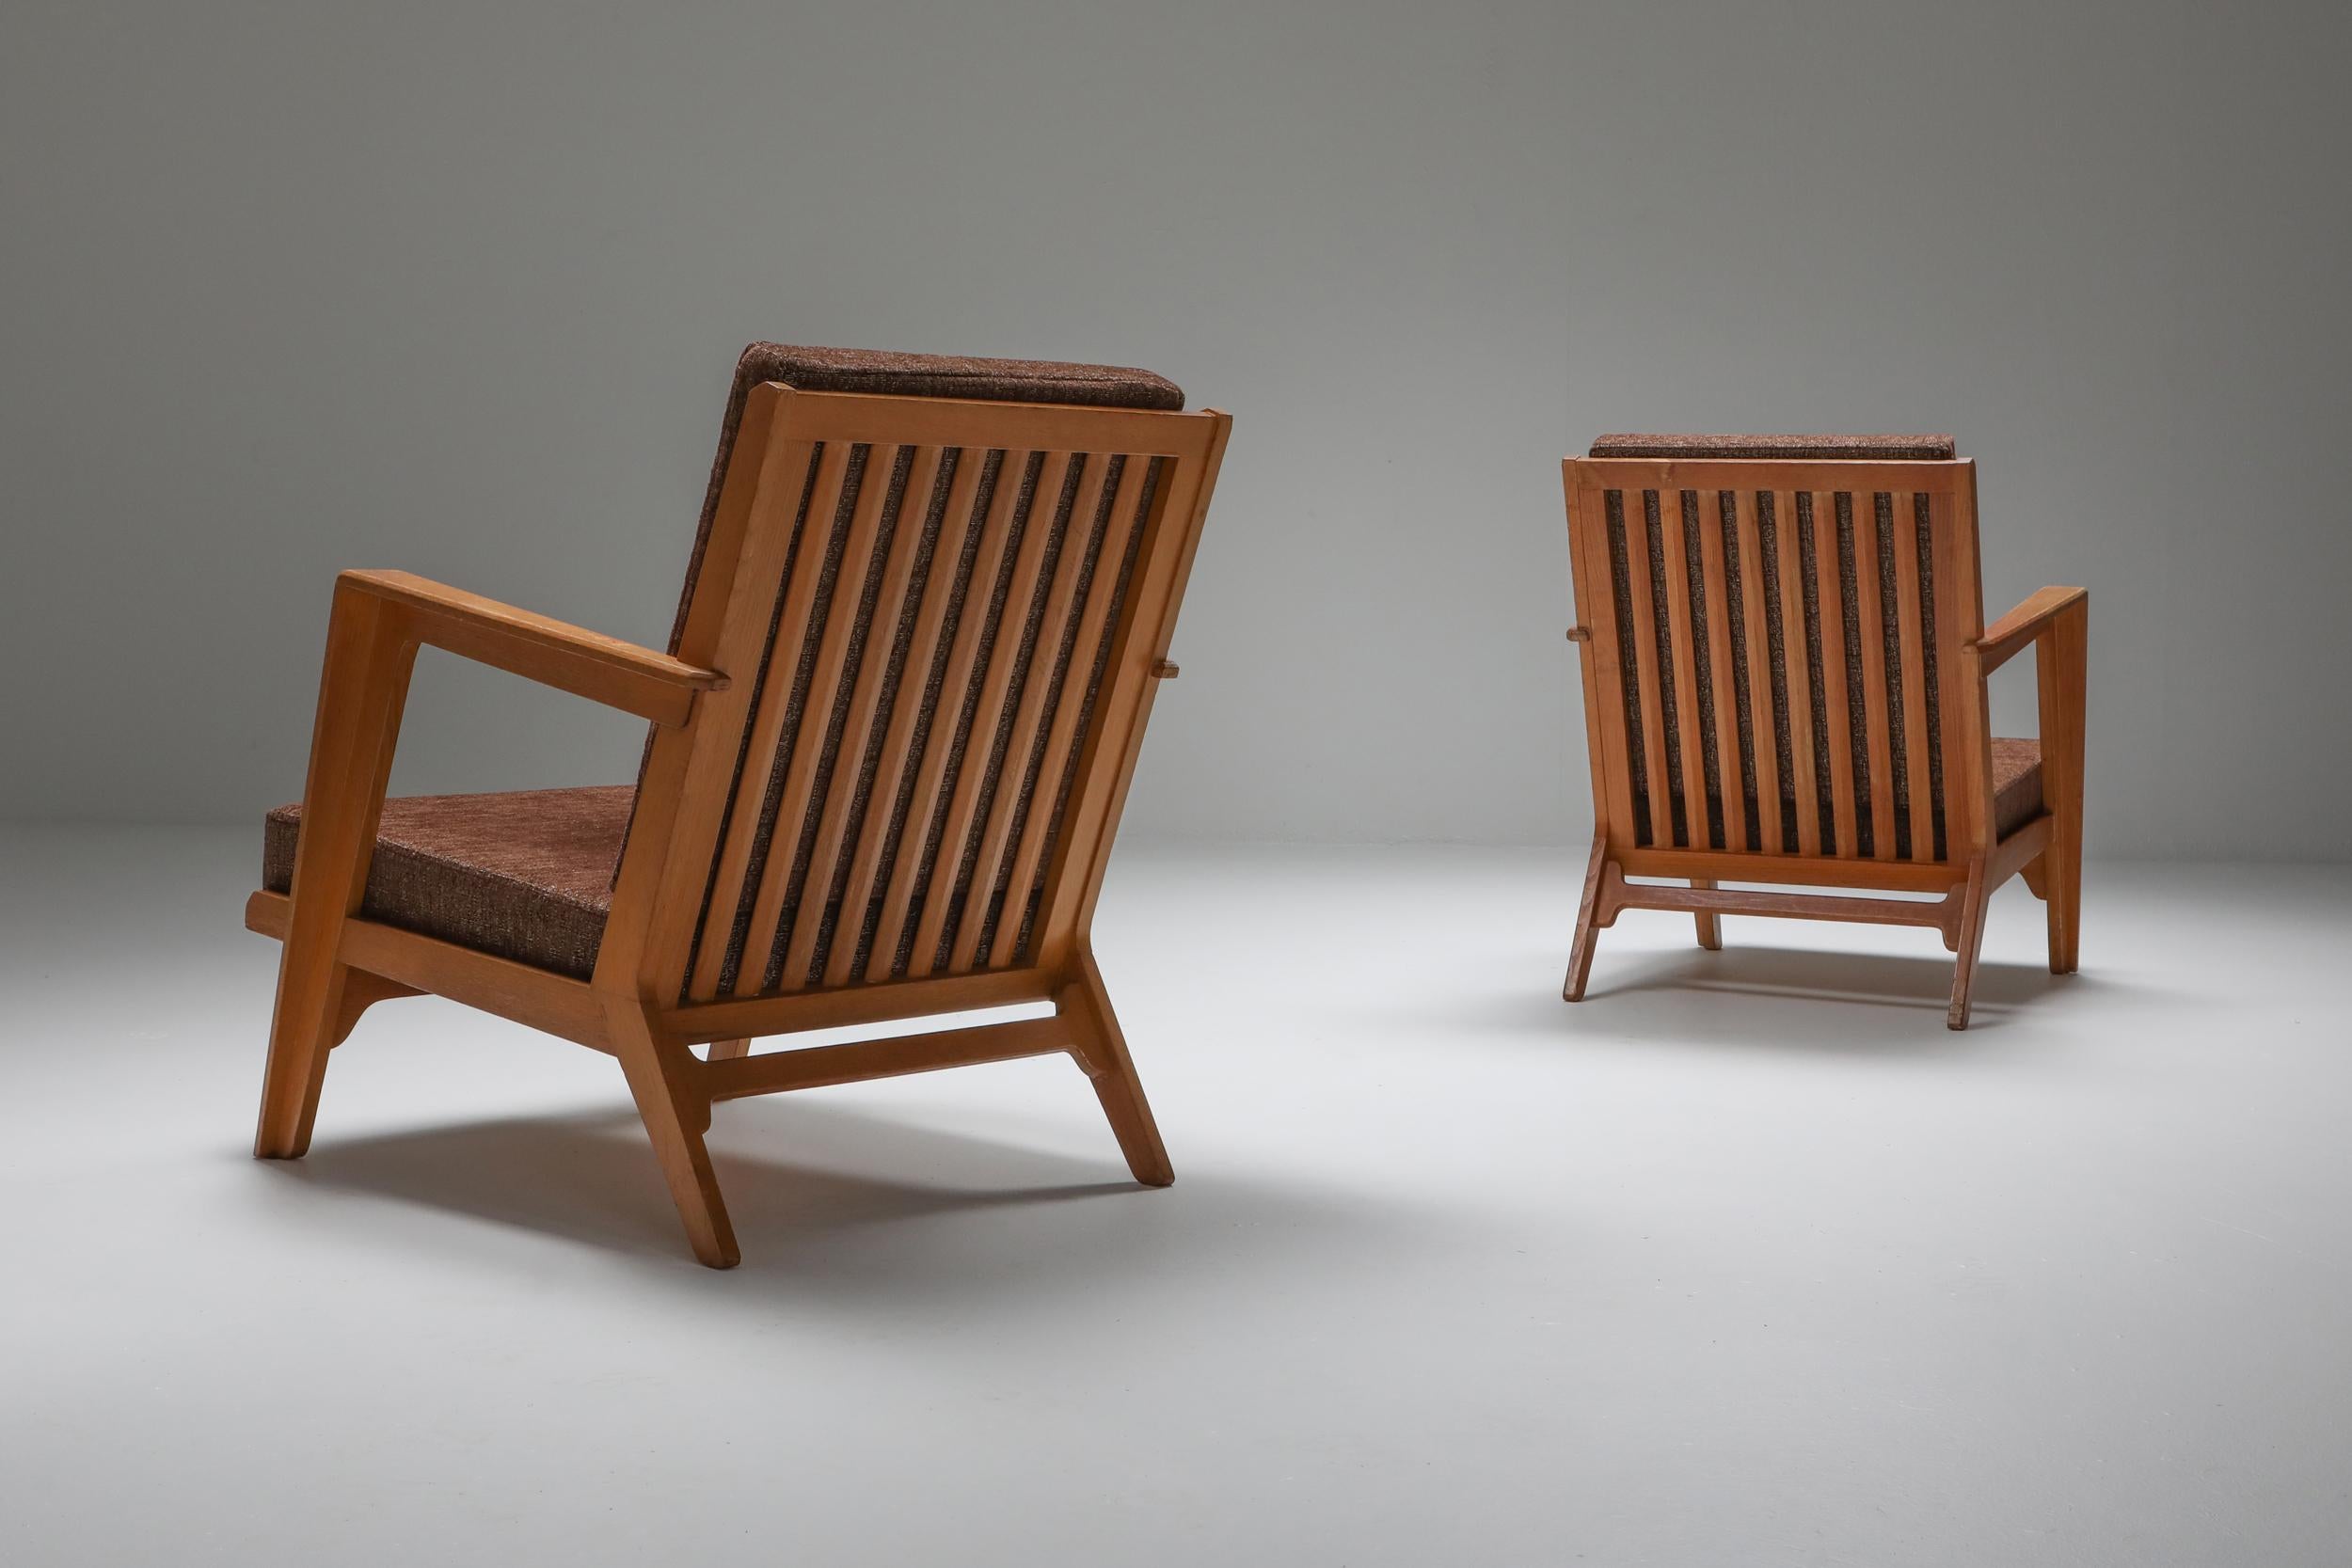 Mid-Century Modern, Elmar Berkovich, Loungesessel, 1950, Niederlande.

Dies ist ein super seltenes Paar Stühle, original gepolstert, Teakholzrahmen mit atemberaubenden Details
Elmar Berkovich hat einige Werke in Museumssammlungen, wie dem